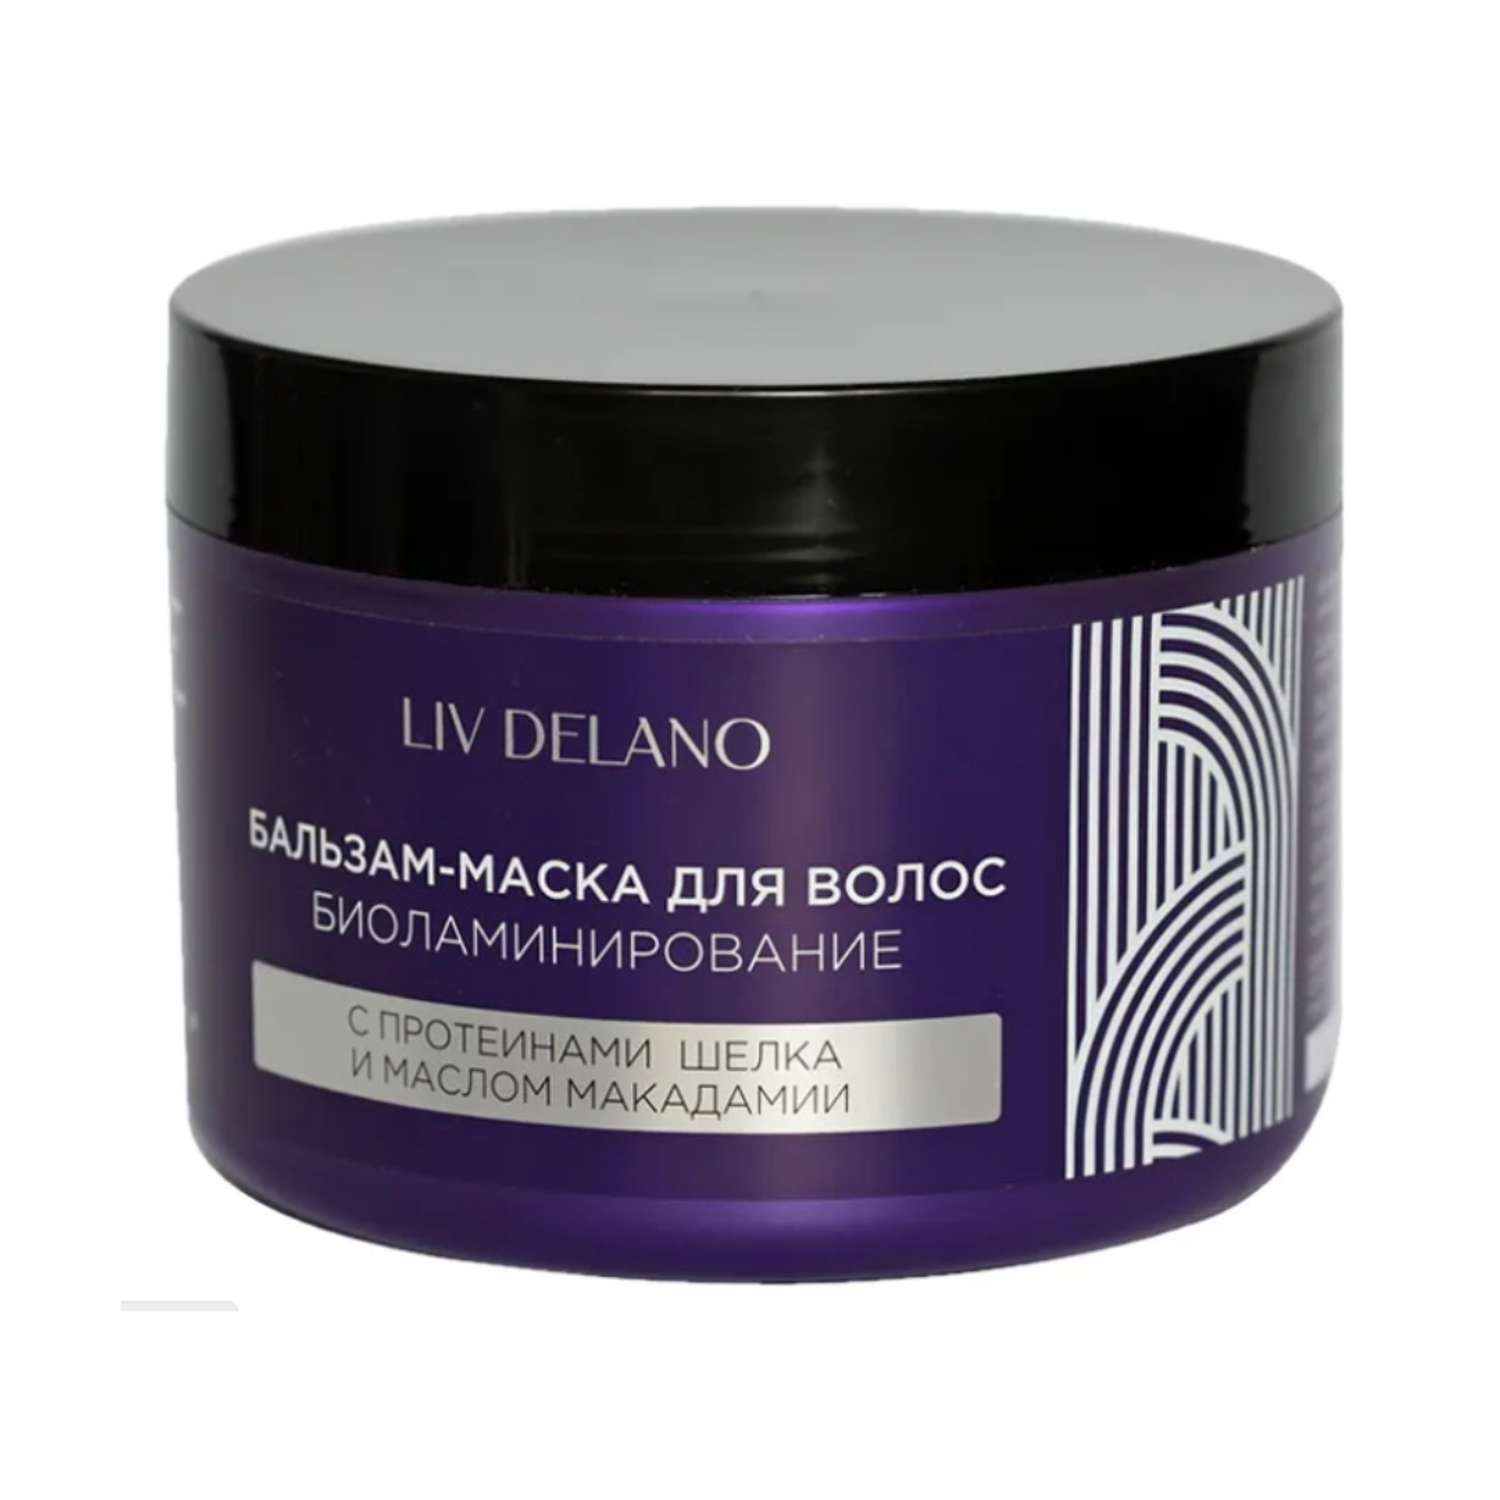 Бальзам для волос LIV DELANO биоламинирование с протеинами шёлка и маслом макадами 500 мл - фото 1